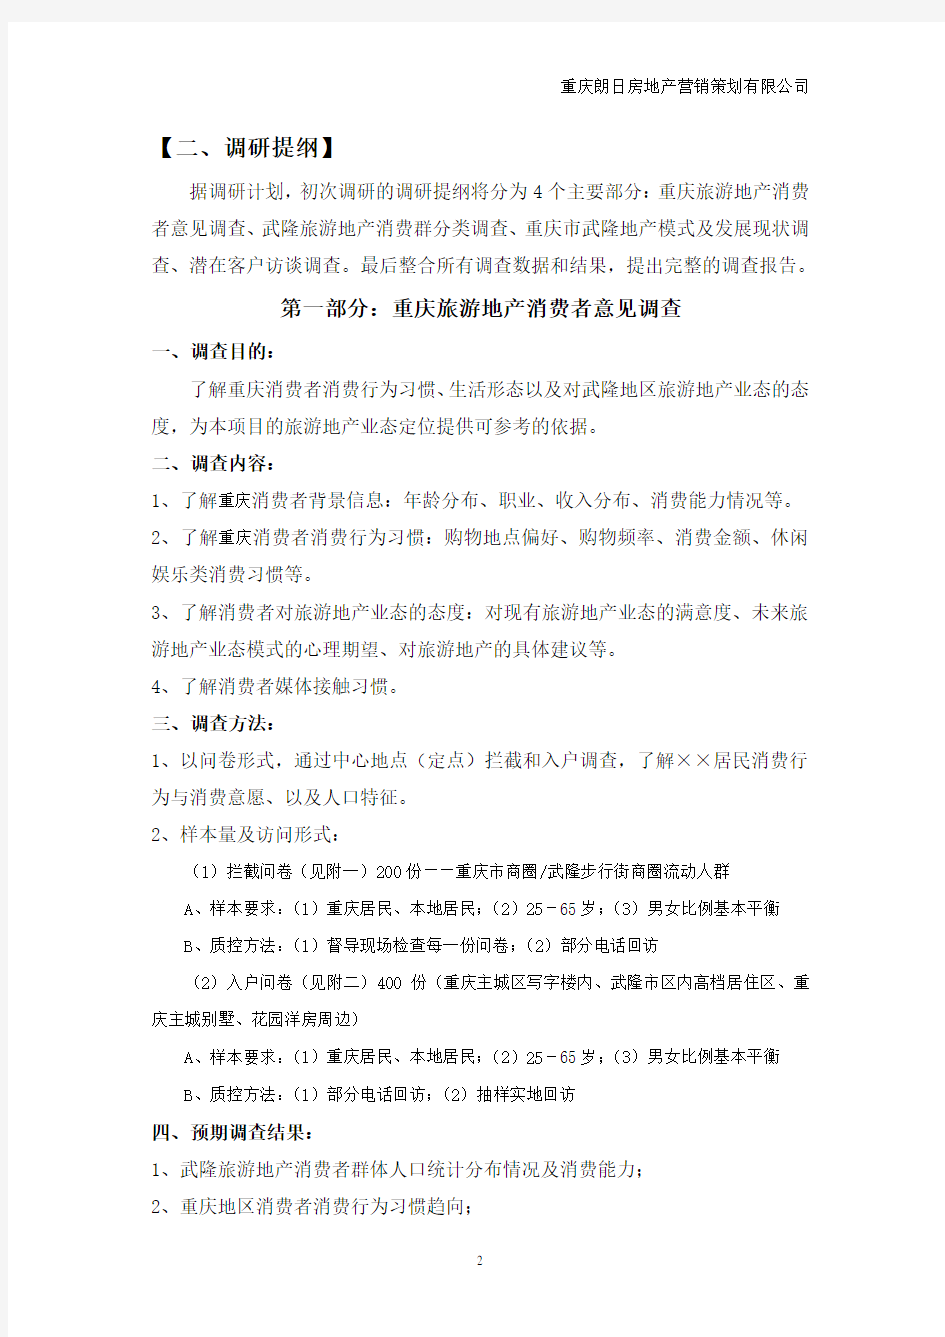 重庆旅游地产市场调研计划(详)